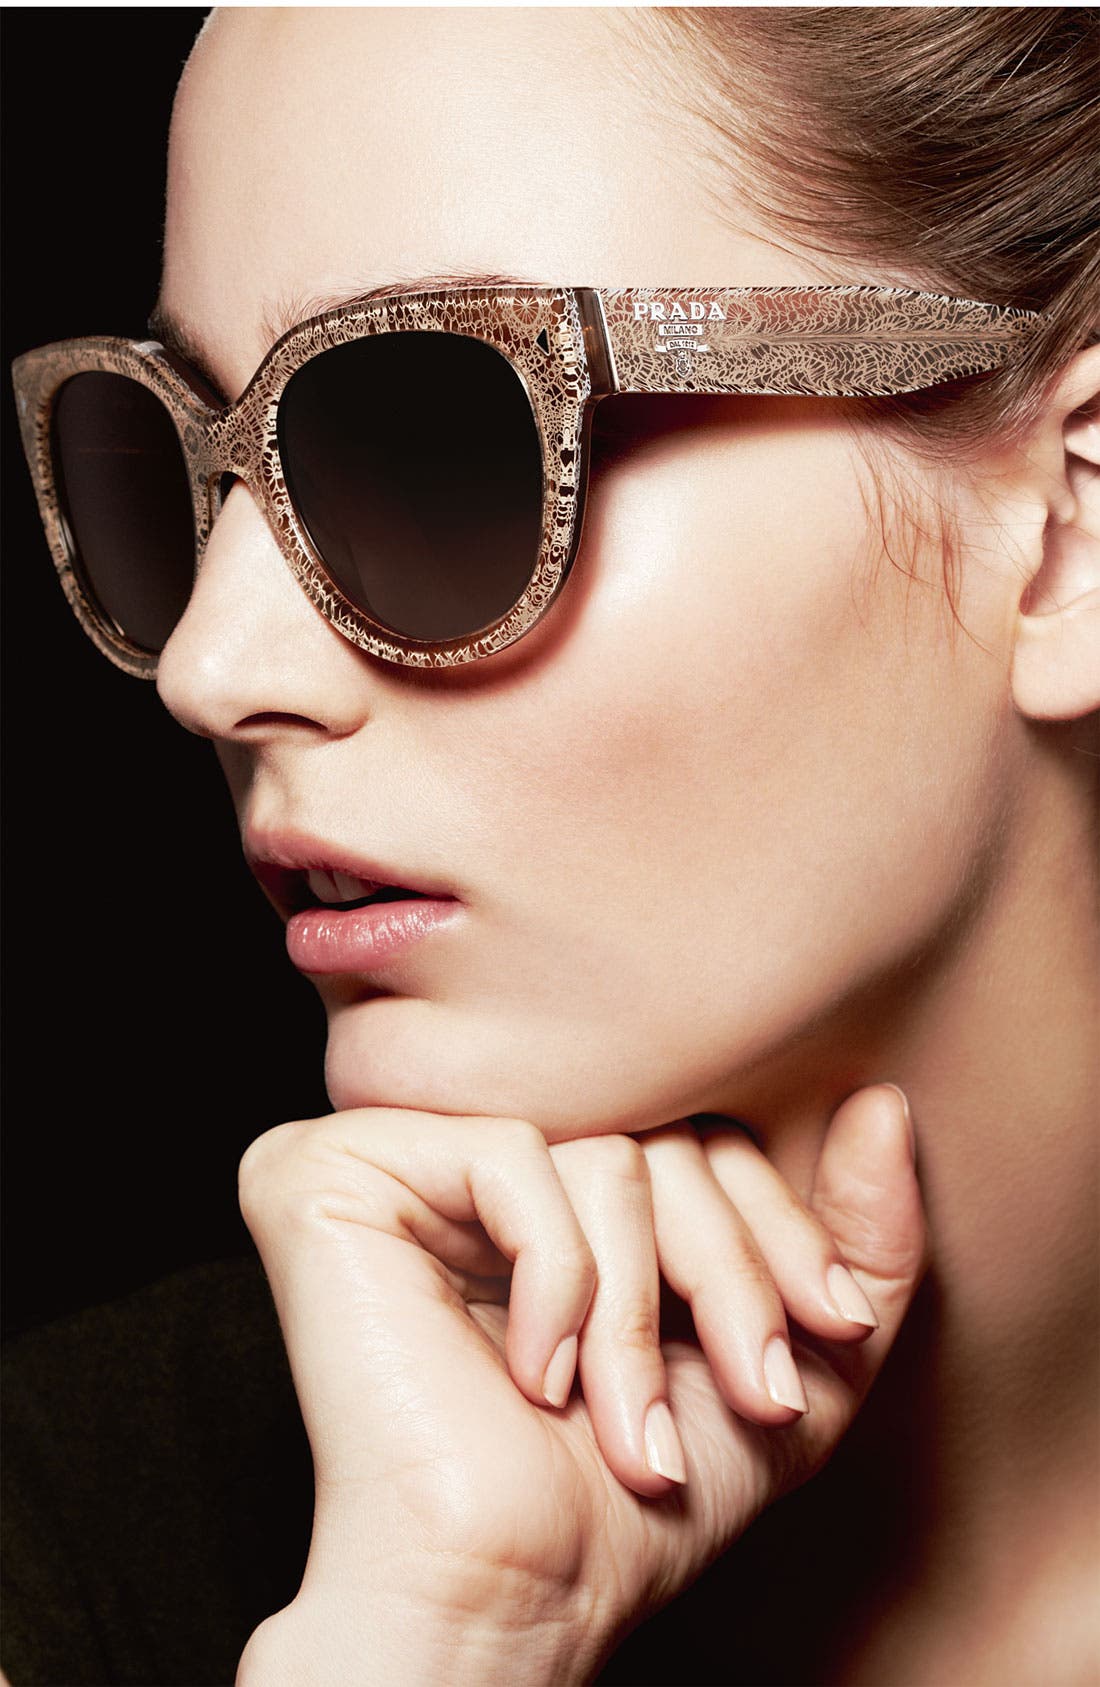 prada women's phantos 54mm sunglasses